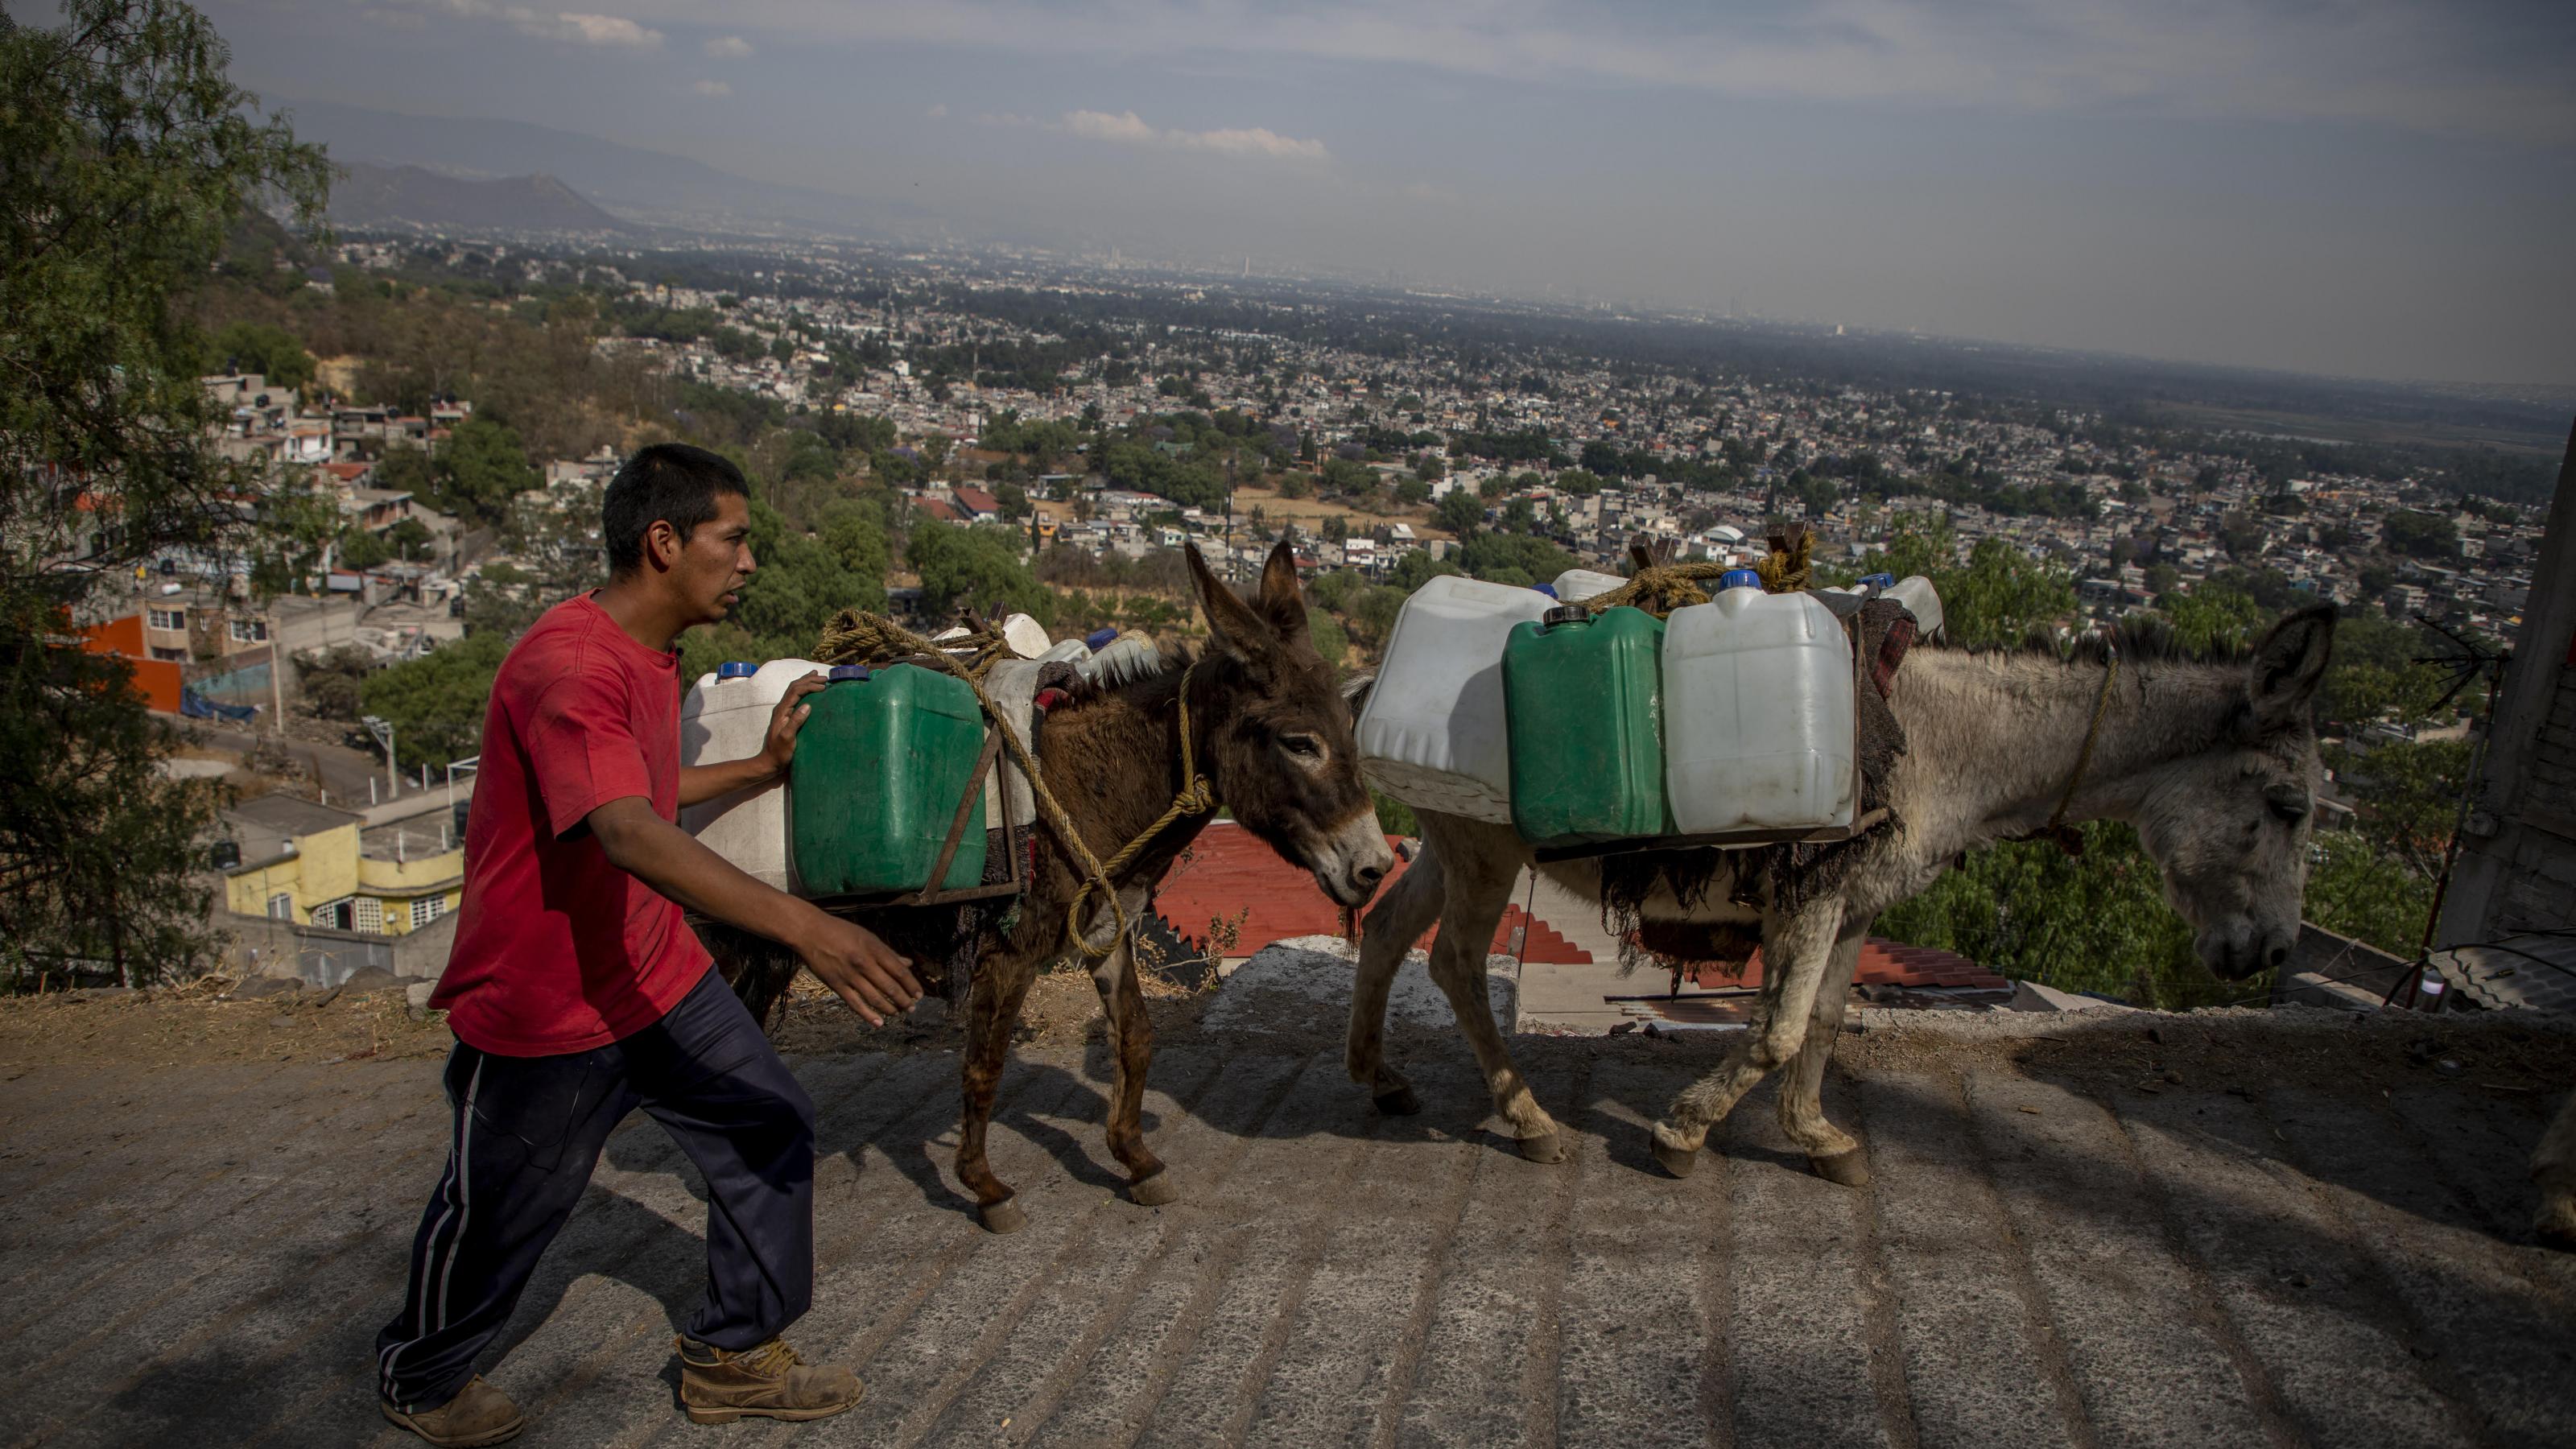 Felix Villeda Rivera geht neben Eseln, die Wasserkanister tragen. Seit Wochen igibt es in seinem Stadtteil kaum noch Wasser. Santa Cruz Acalpixca en Xochimilco, südlich der Hauptstadt, unterbrochen wurde. Der Mangel an Trinkwasser hat Einwohner des Dorfes dazu bewegt, die Versorgung mit Kanistern auf Eseln zu decken.